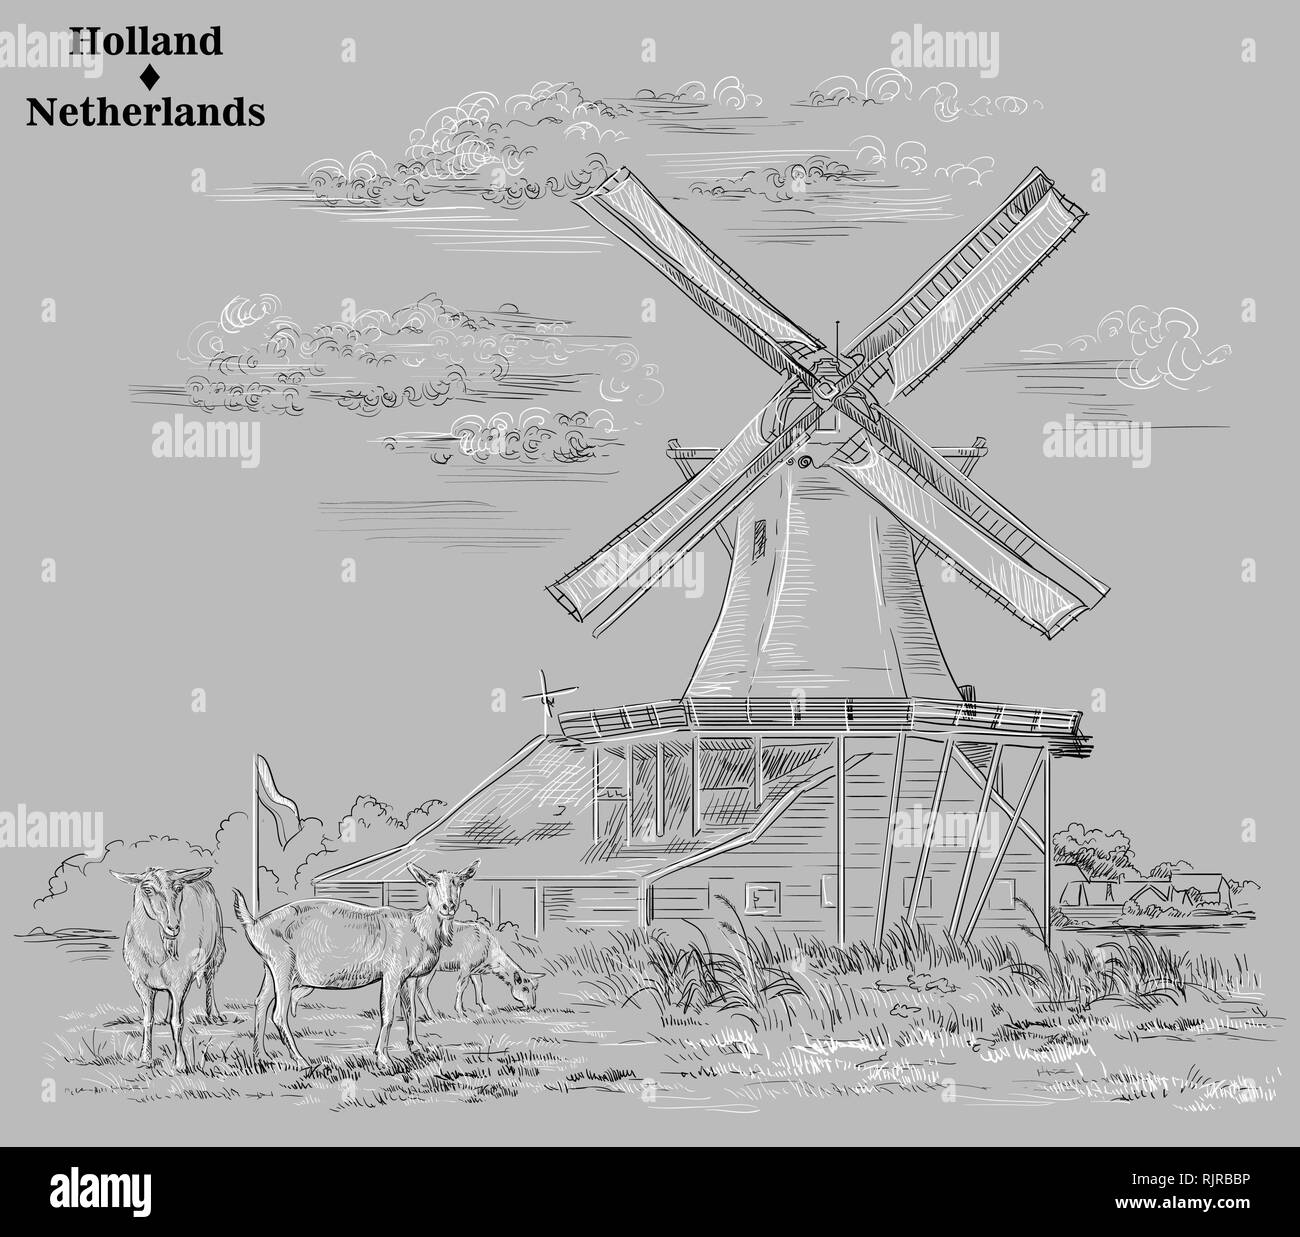 Vektor hand Zeichnung Abbildung von Wassermühlen in Holland, Niederlande. Wassermühle und Ziegen weiden auf der Wiese. Vektor Skizze Handzeichnung illustra Stock Vektor